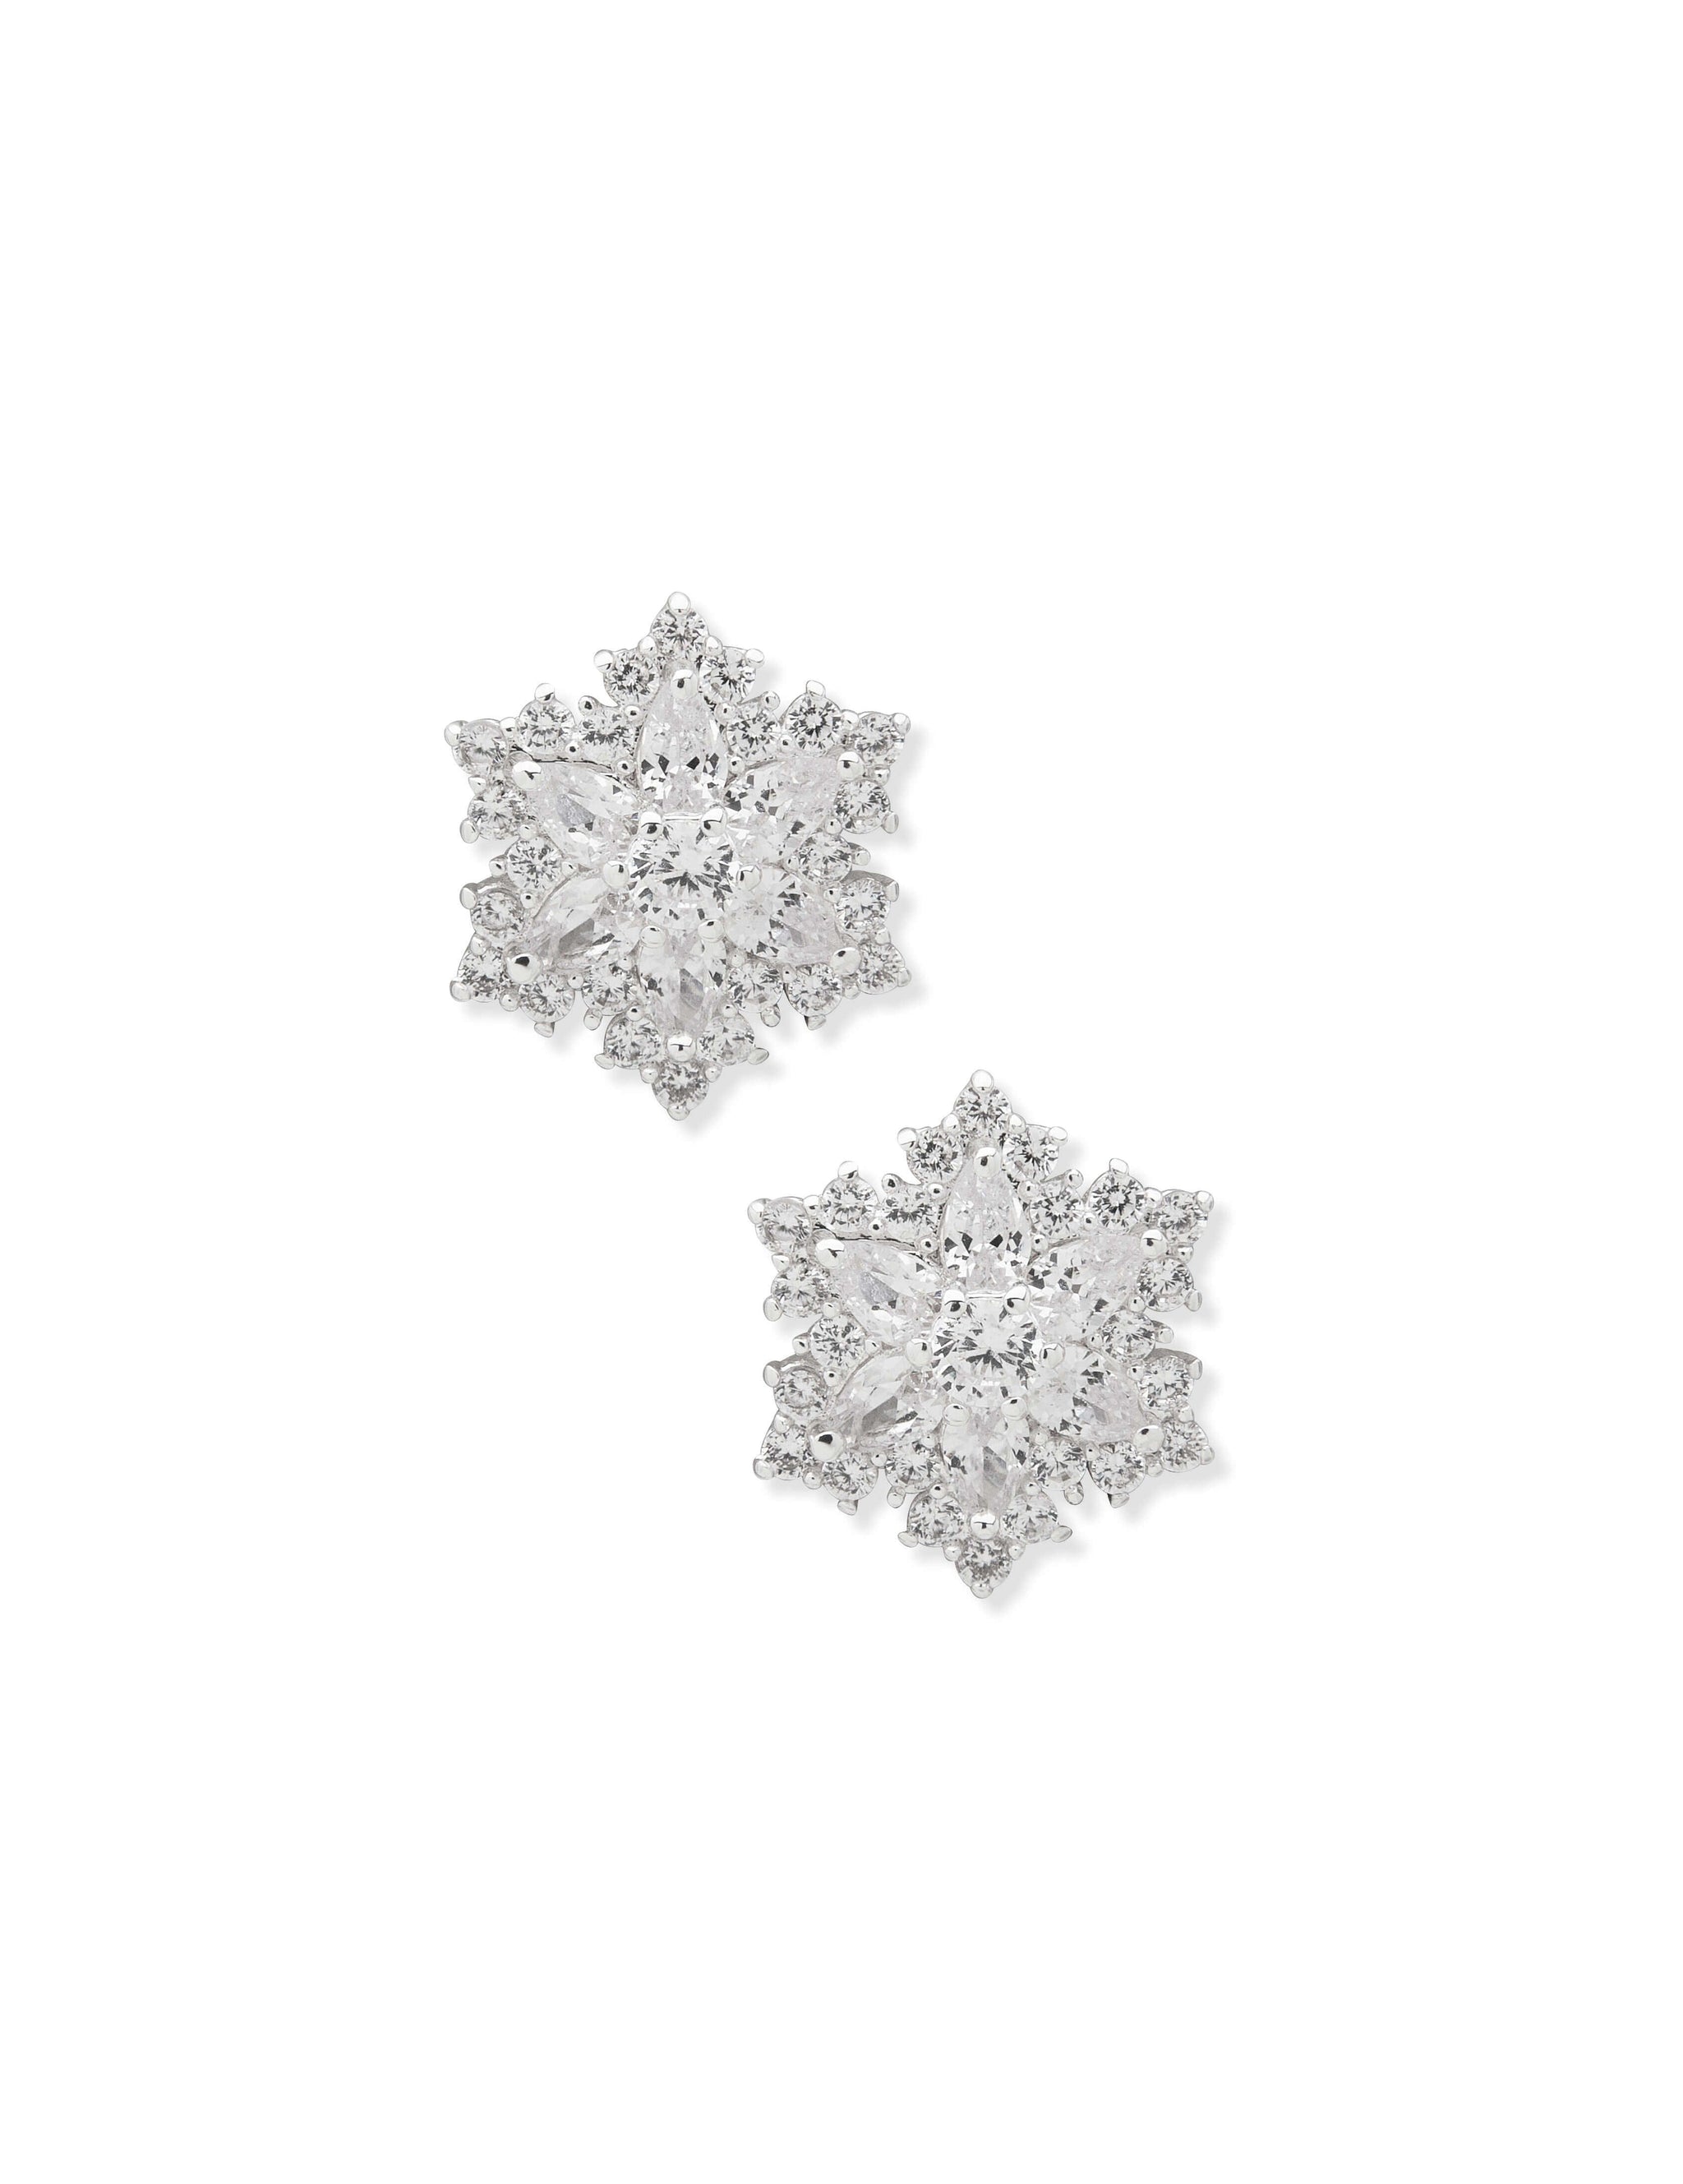 Buy Snowflake Earrings, Diamond Earrings, Gold Snowflake Stud Earrings,  Diamond Earrings for Women, Snowflake Studs, Diamond Gift for Woman Online  in India - Etsy